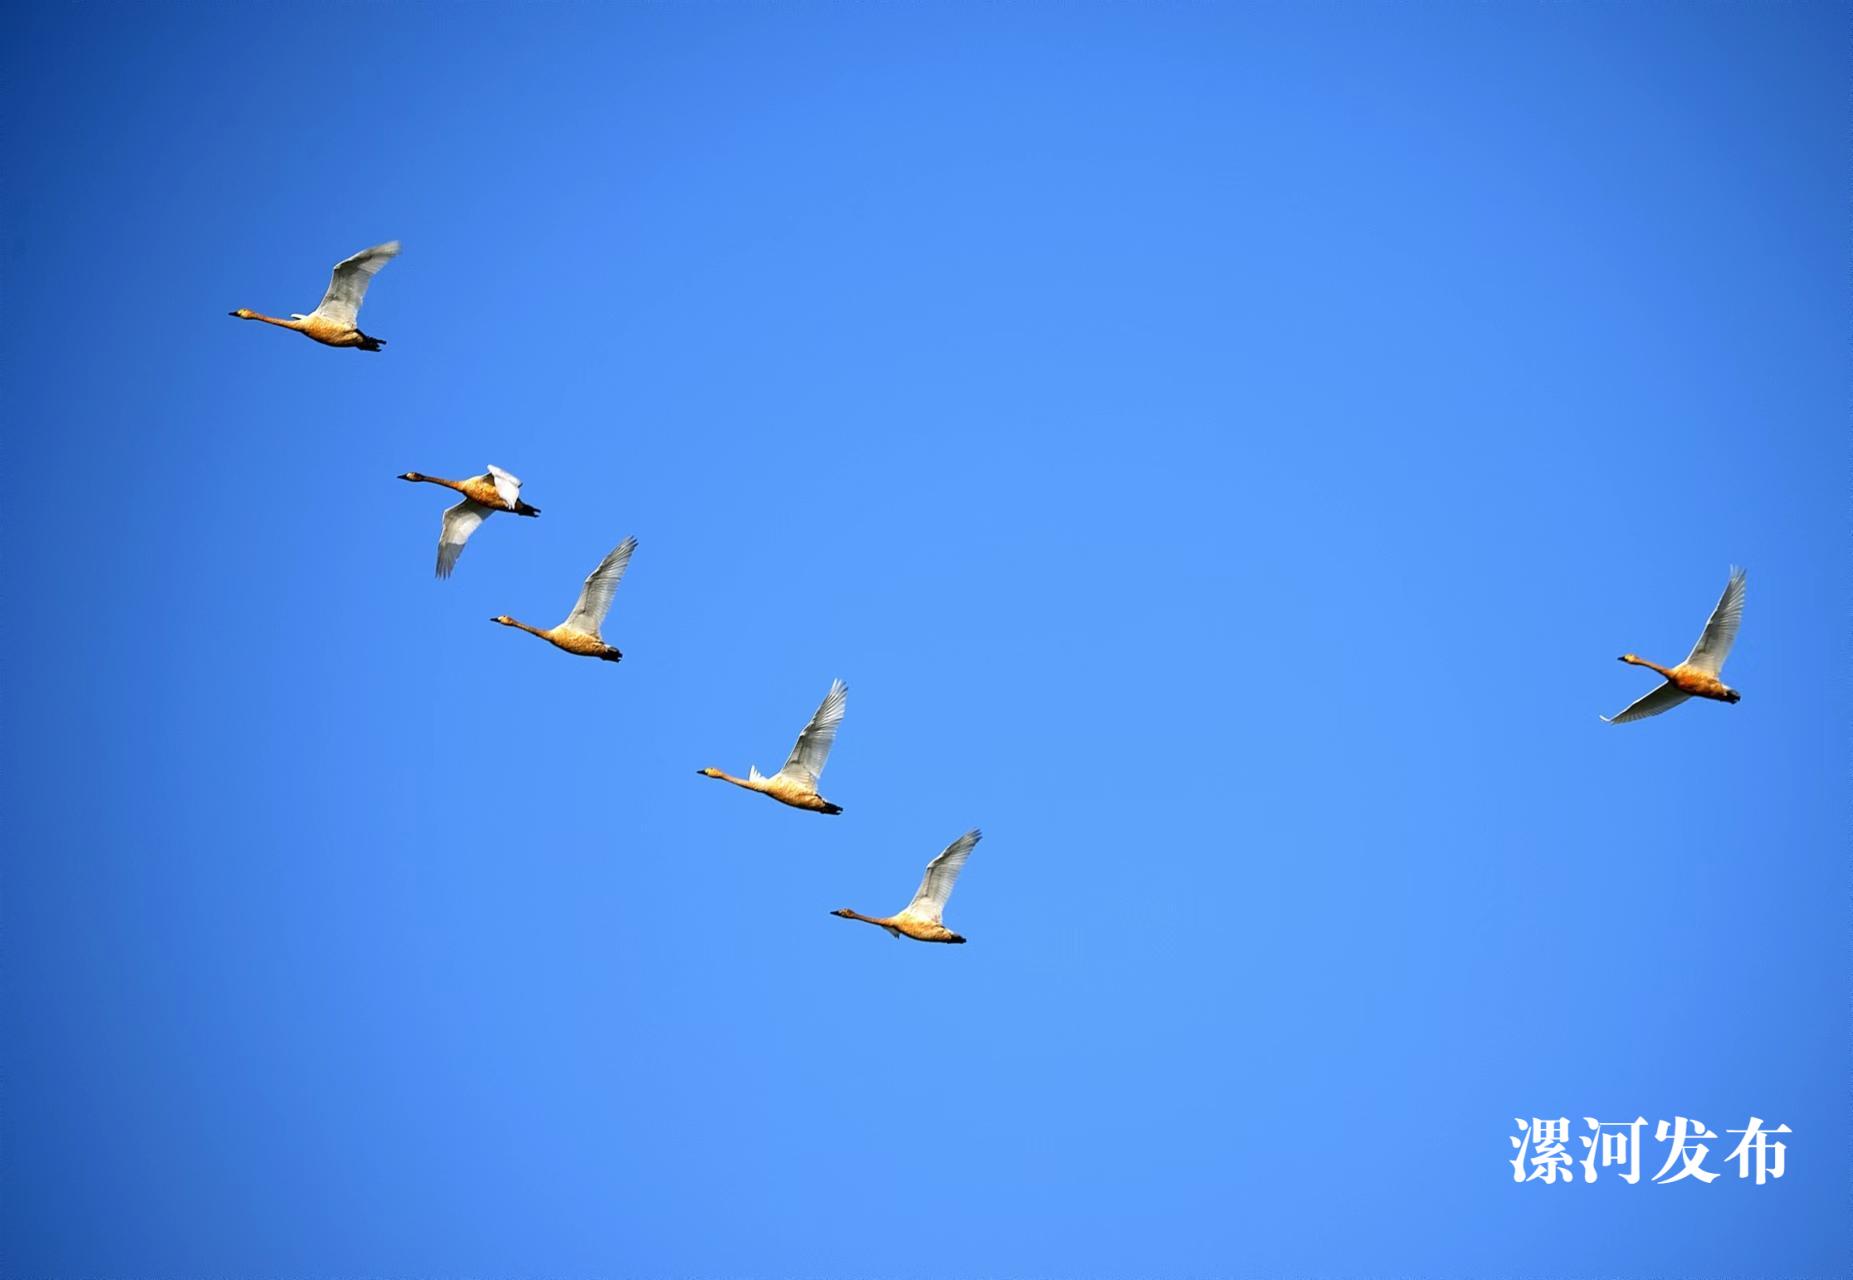 黄龙湿地公园·天鹅.jpg